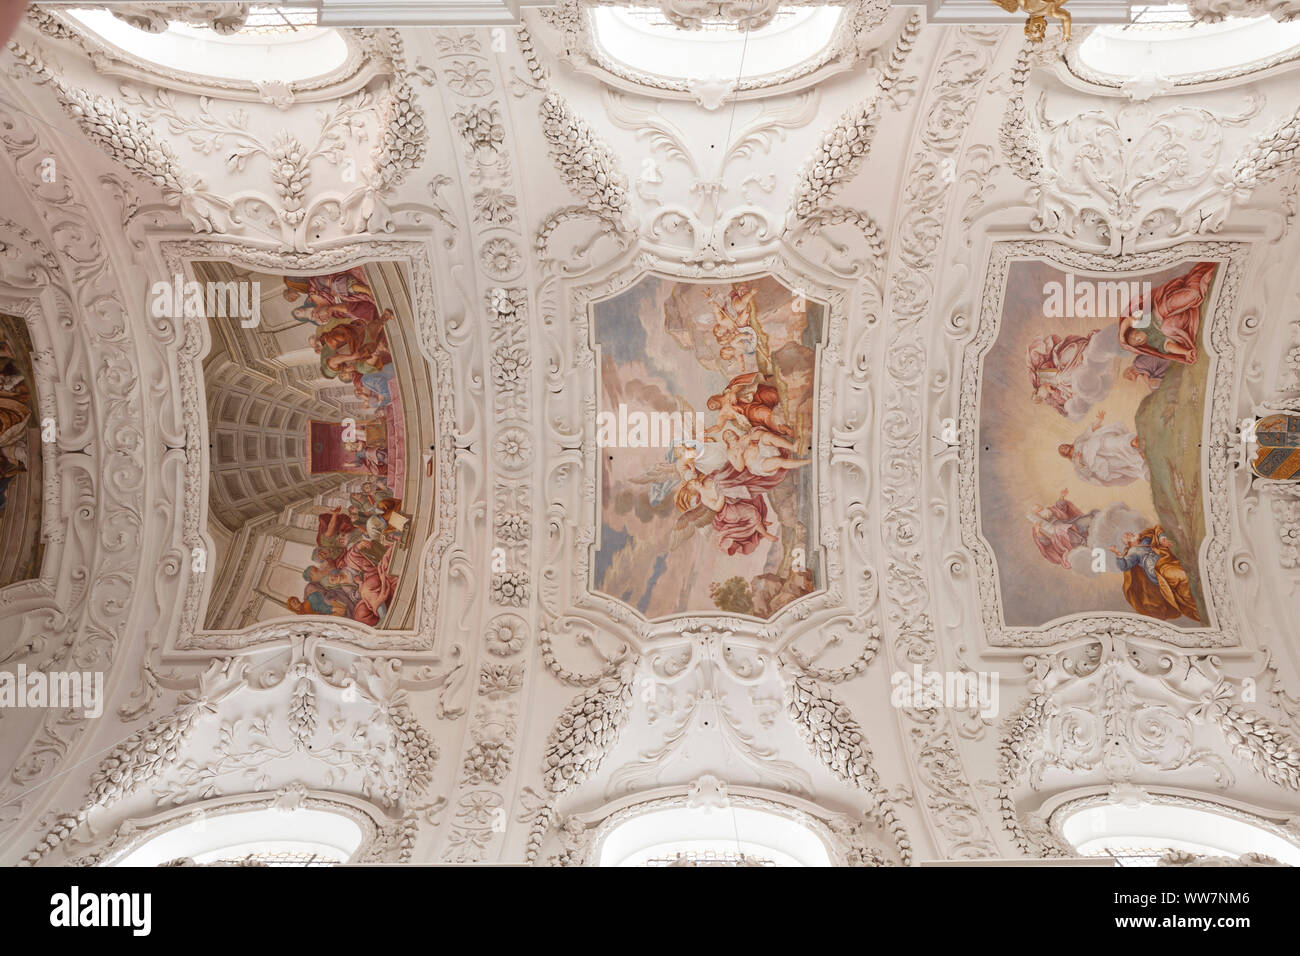 Vue intérieure avec fresques au plafond et de stuc, basilique Saint Quirin, monastère, château Tegernsee, Tegernsee, Bavière, Allemagne, Europe Banque D'Images